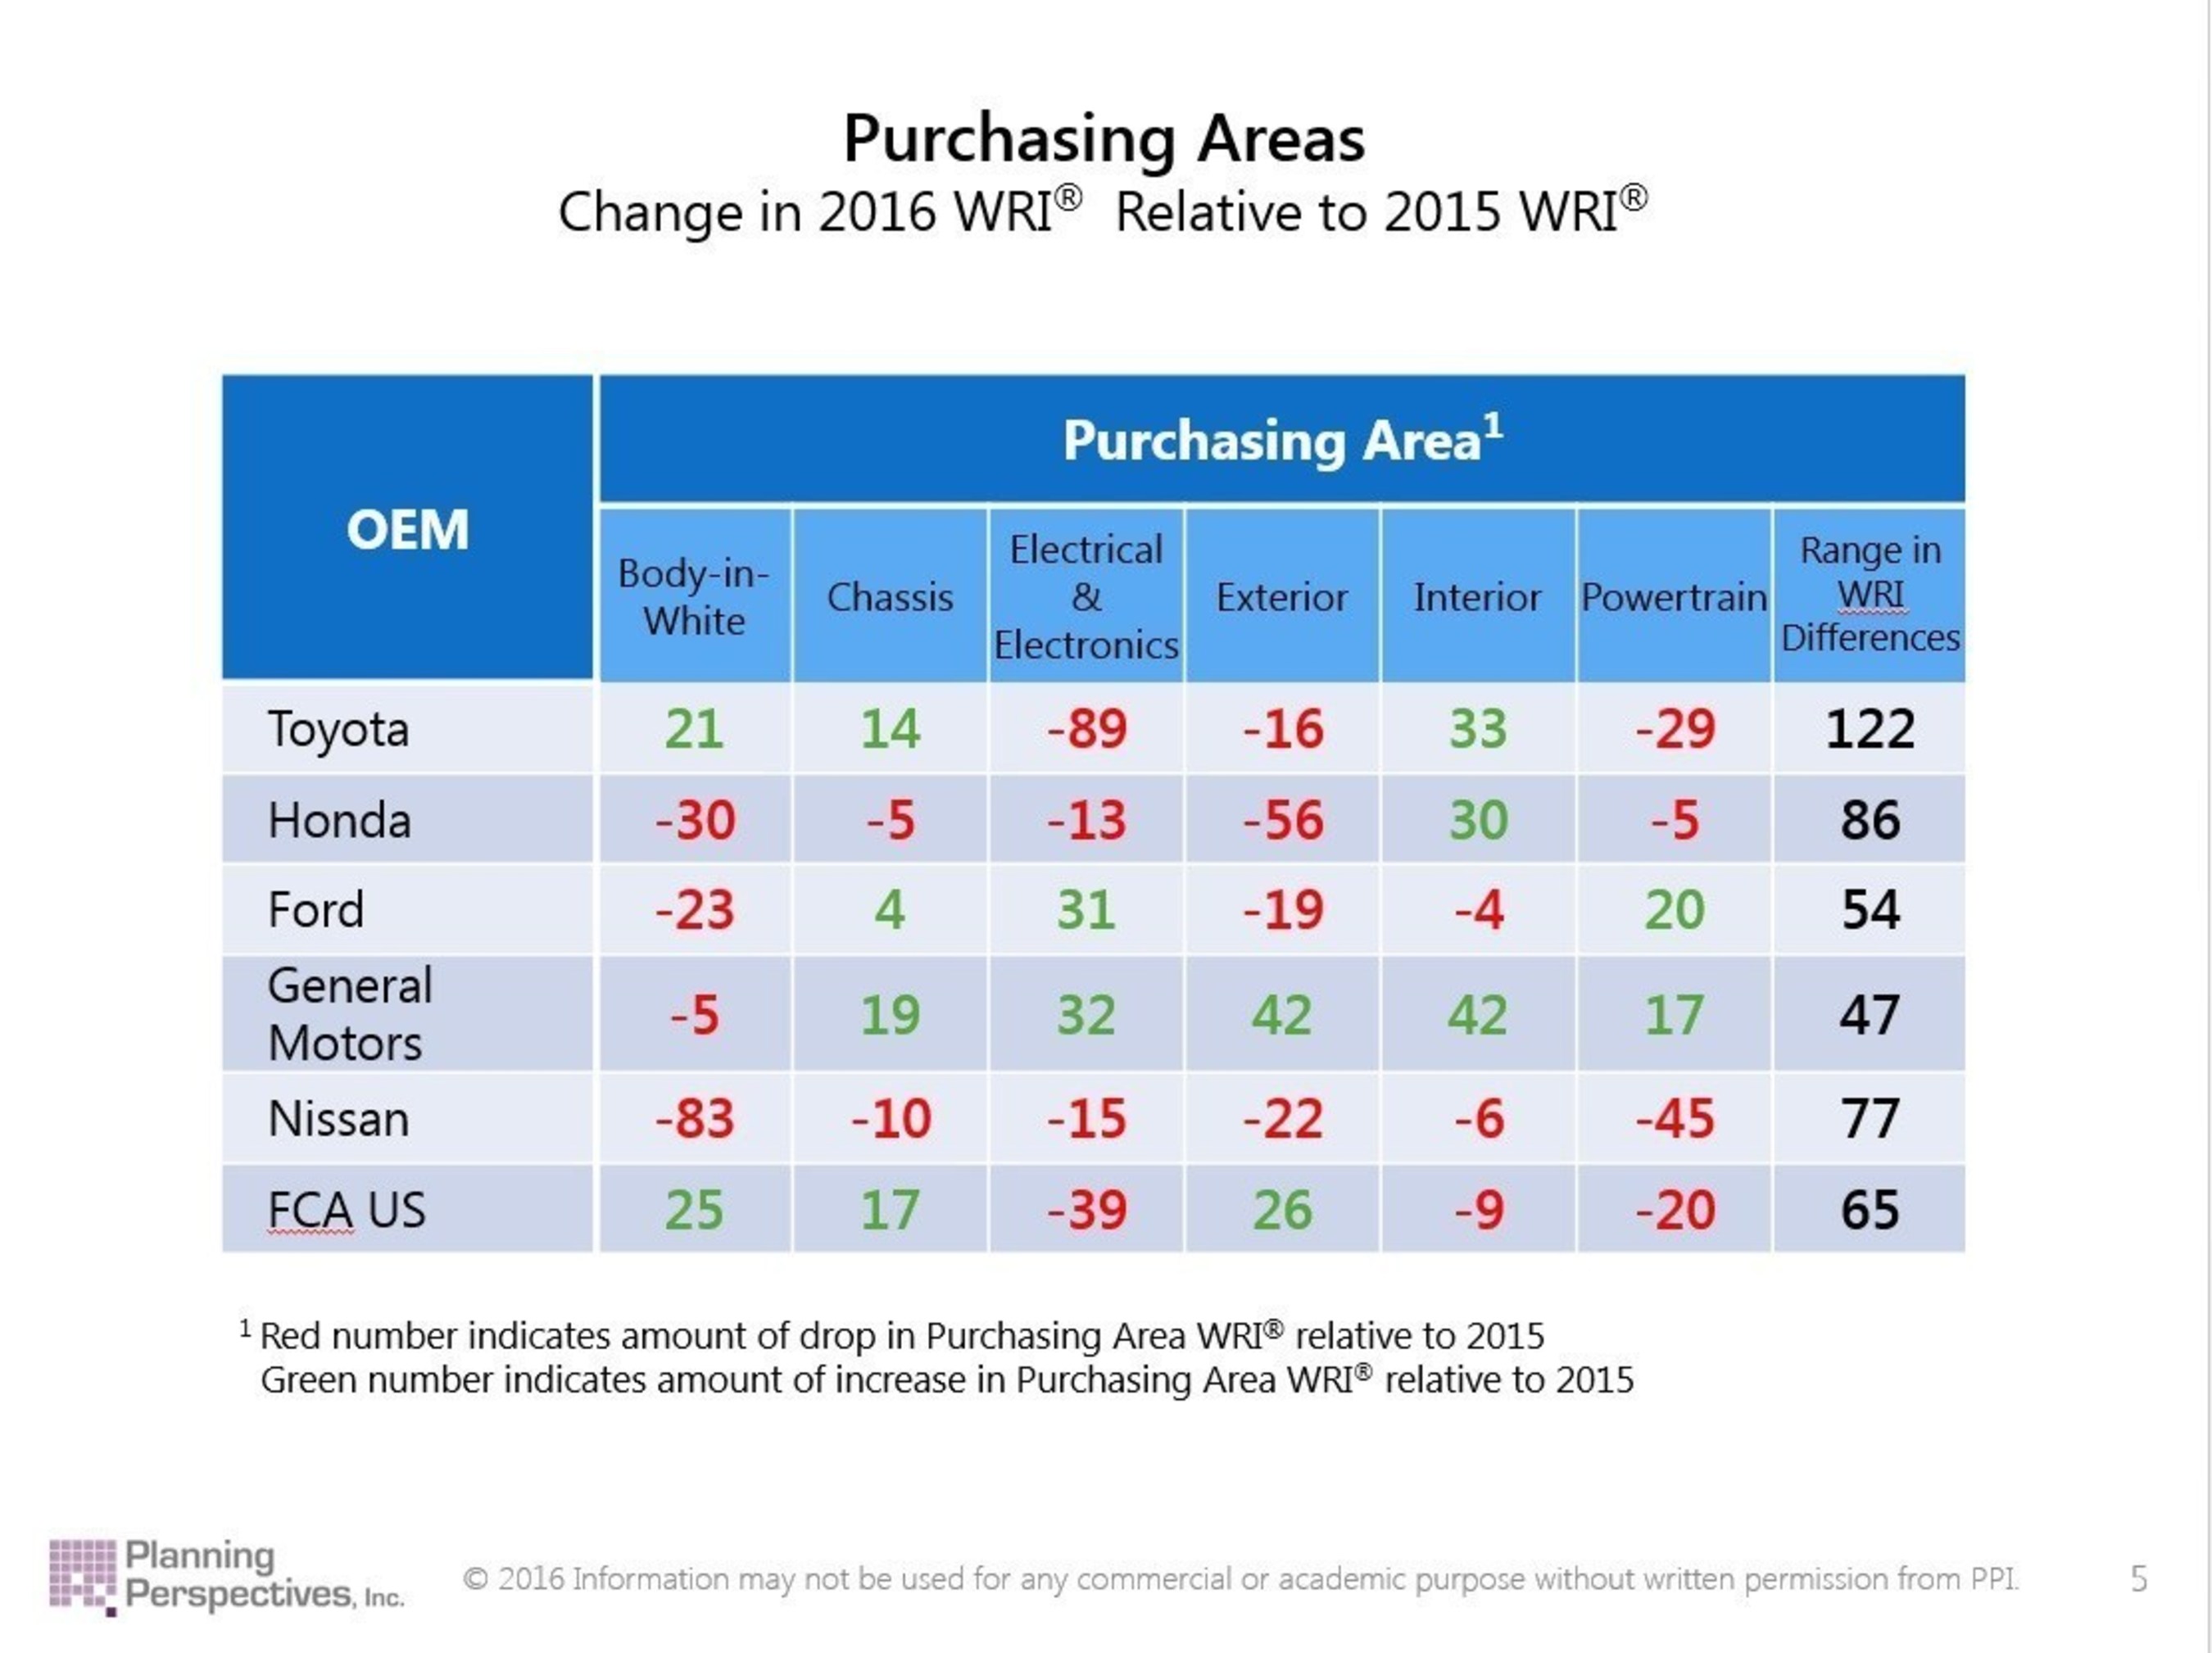 Purchasing Areas: Change in 2016 WRI Relative to 2015 WRI